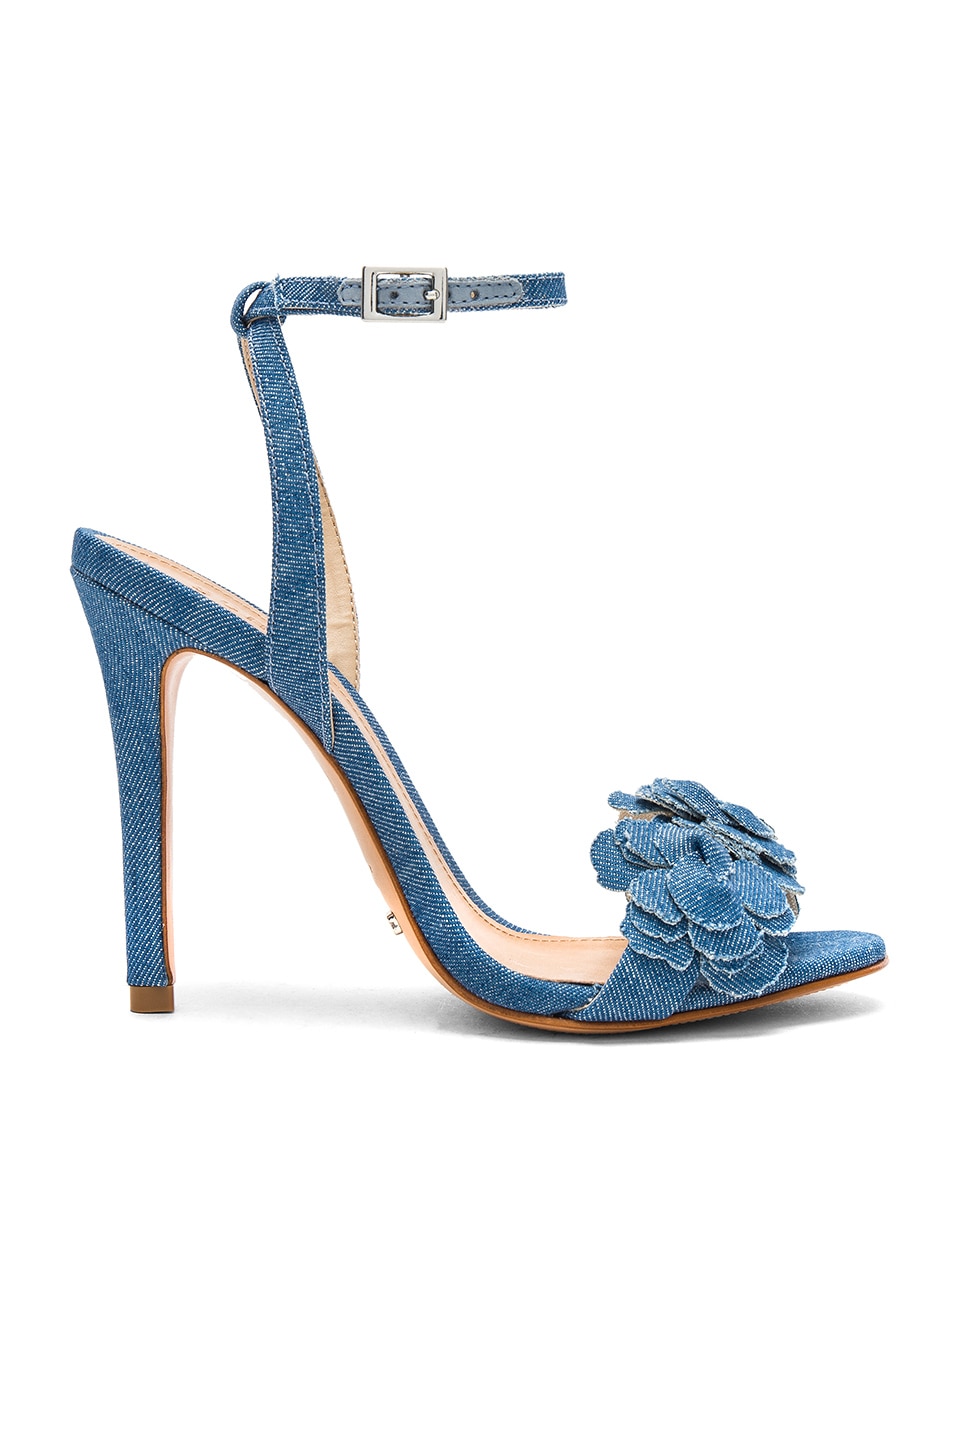 schutz blue heels